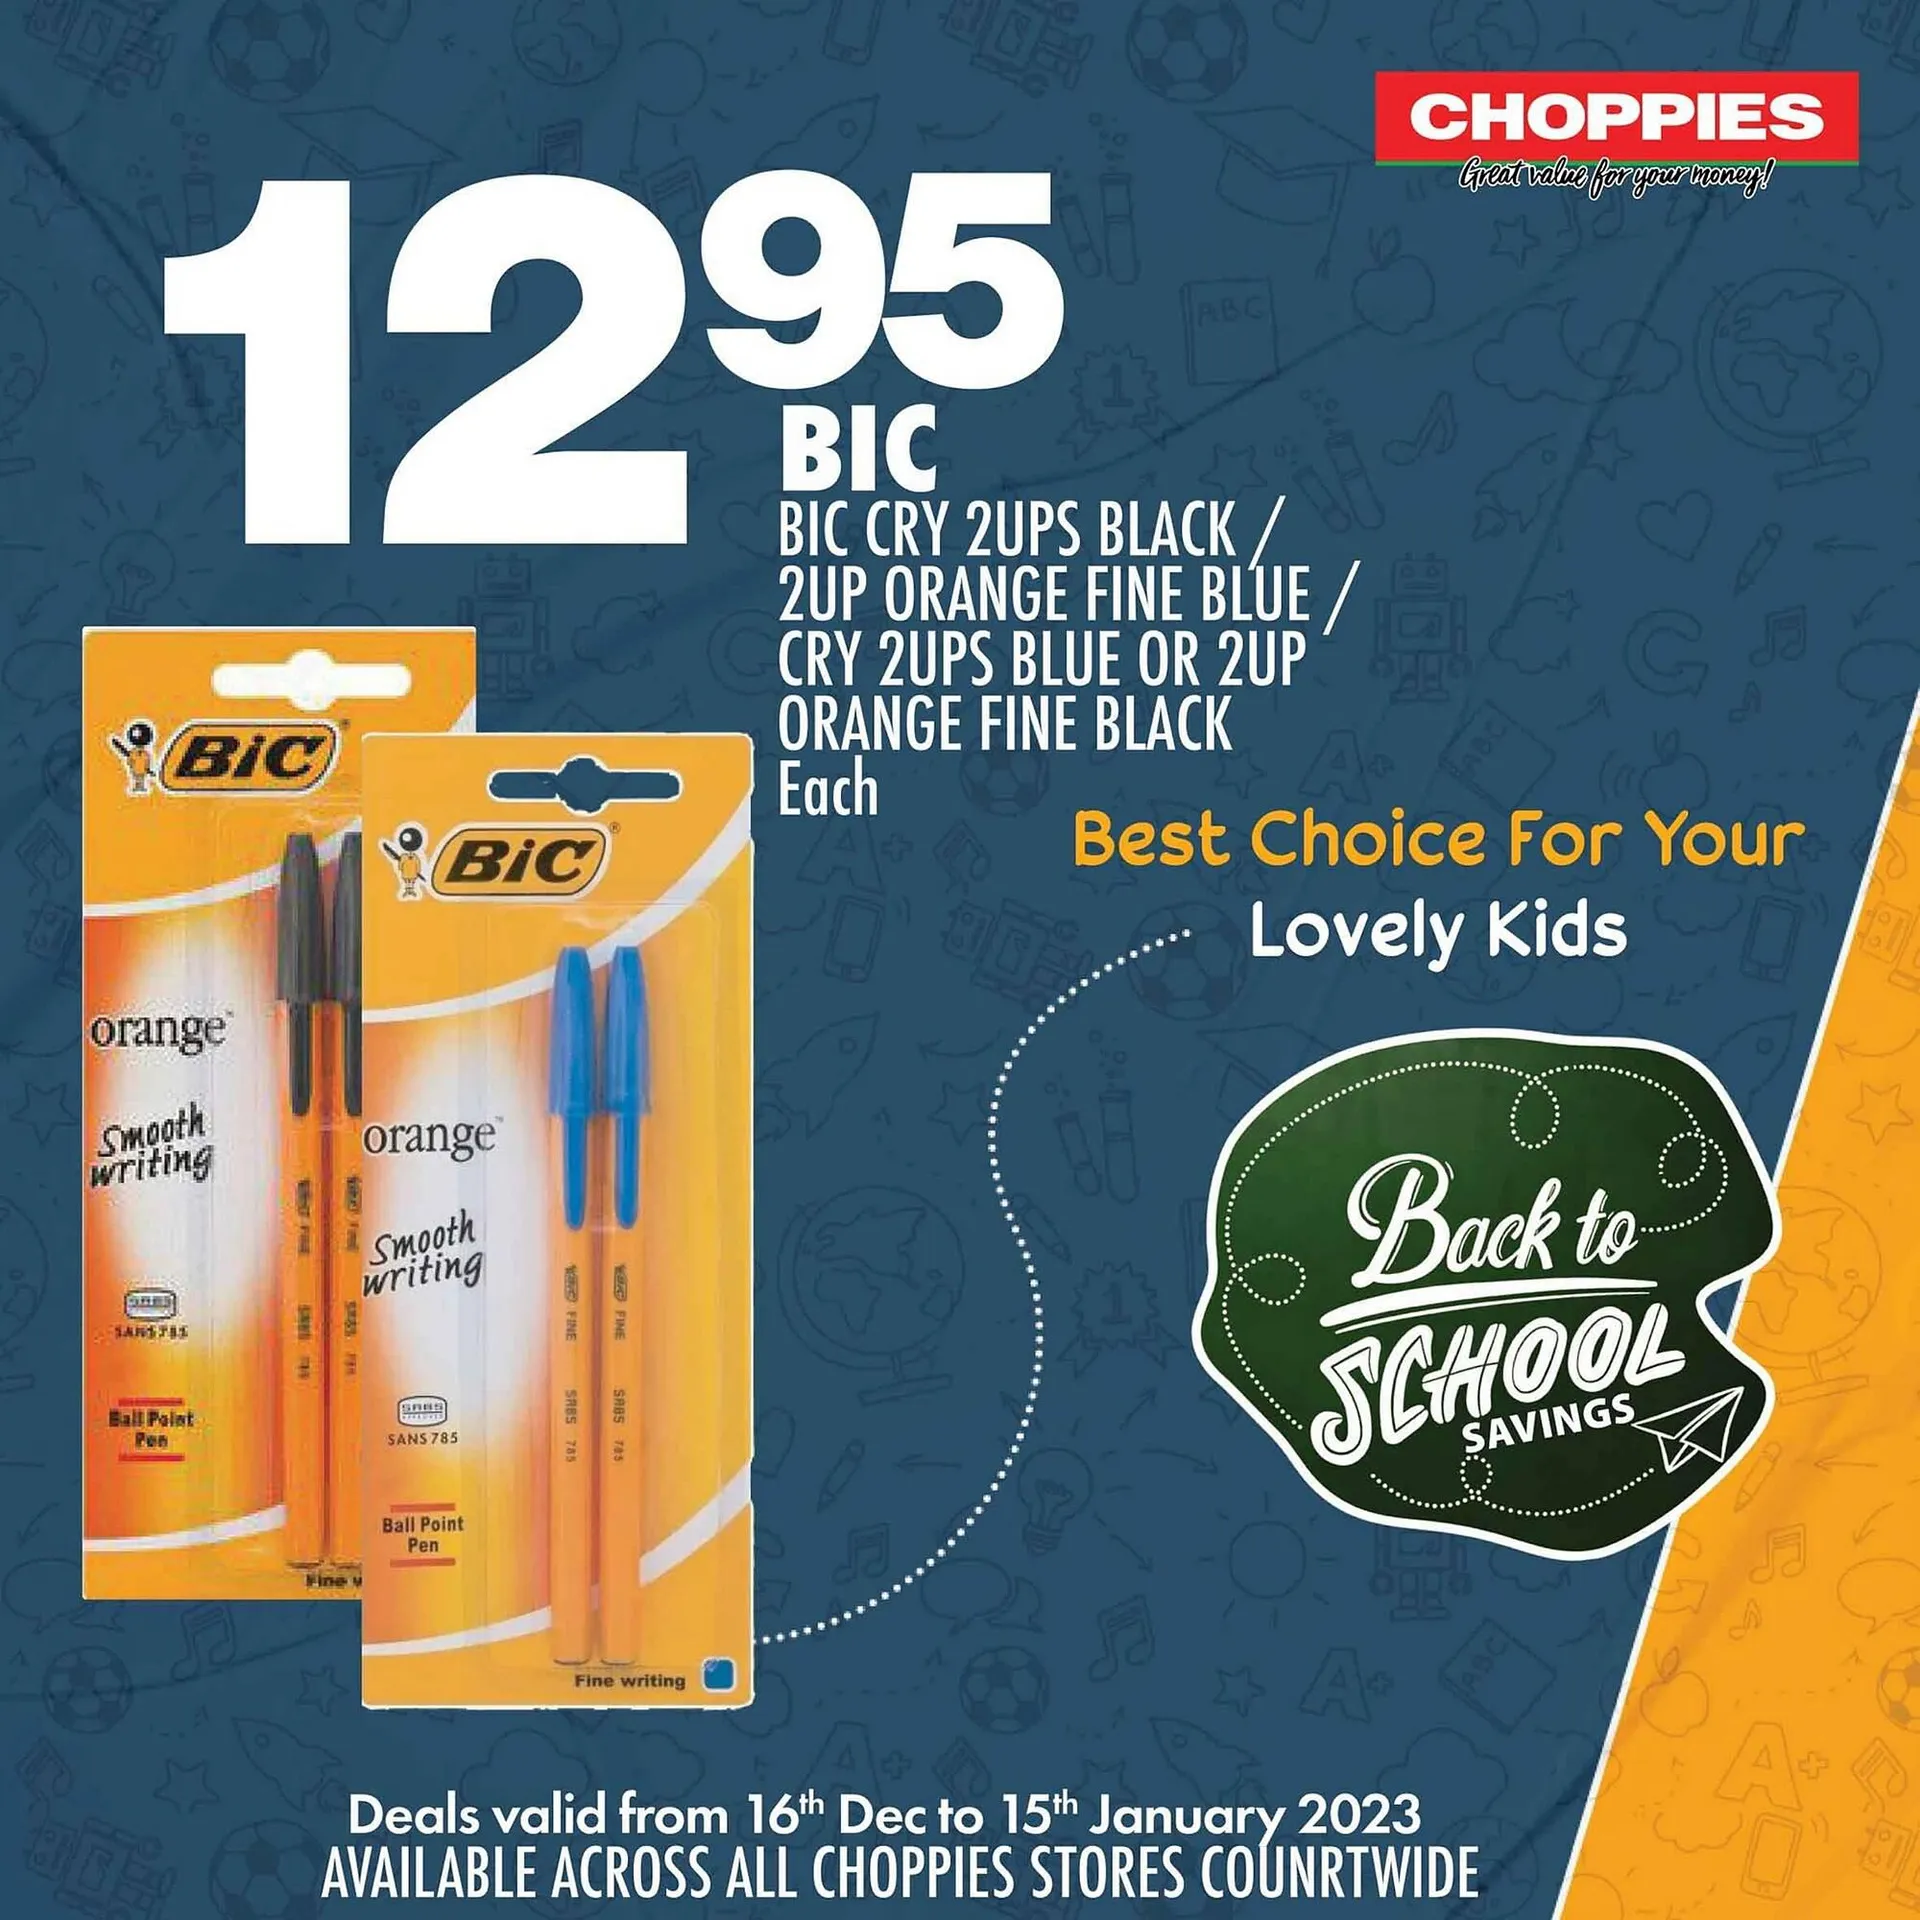 Choppies catalogue - 1